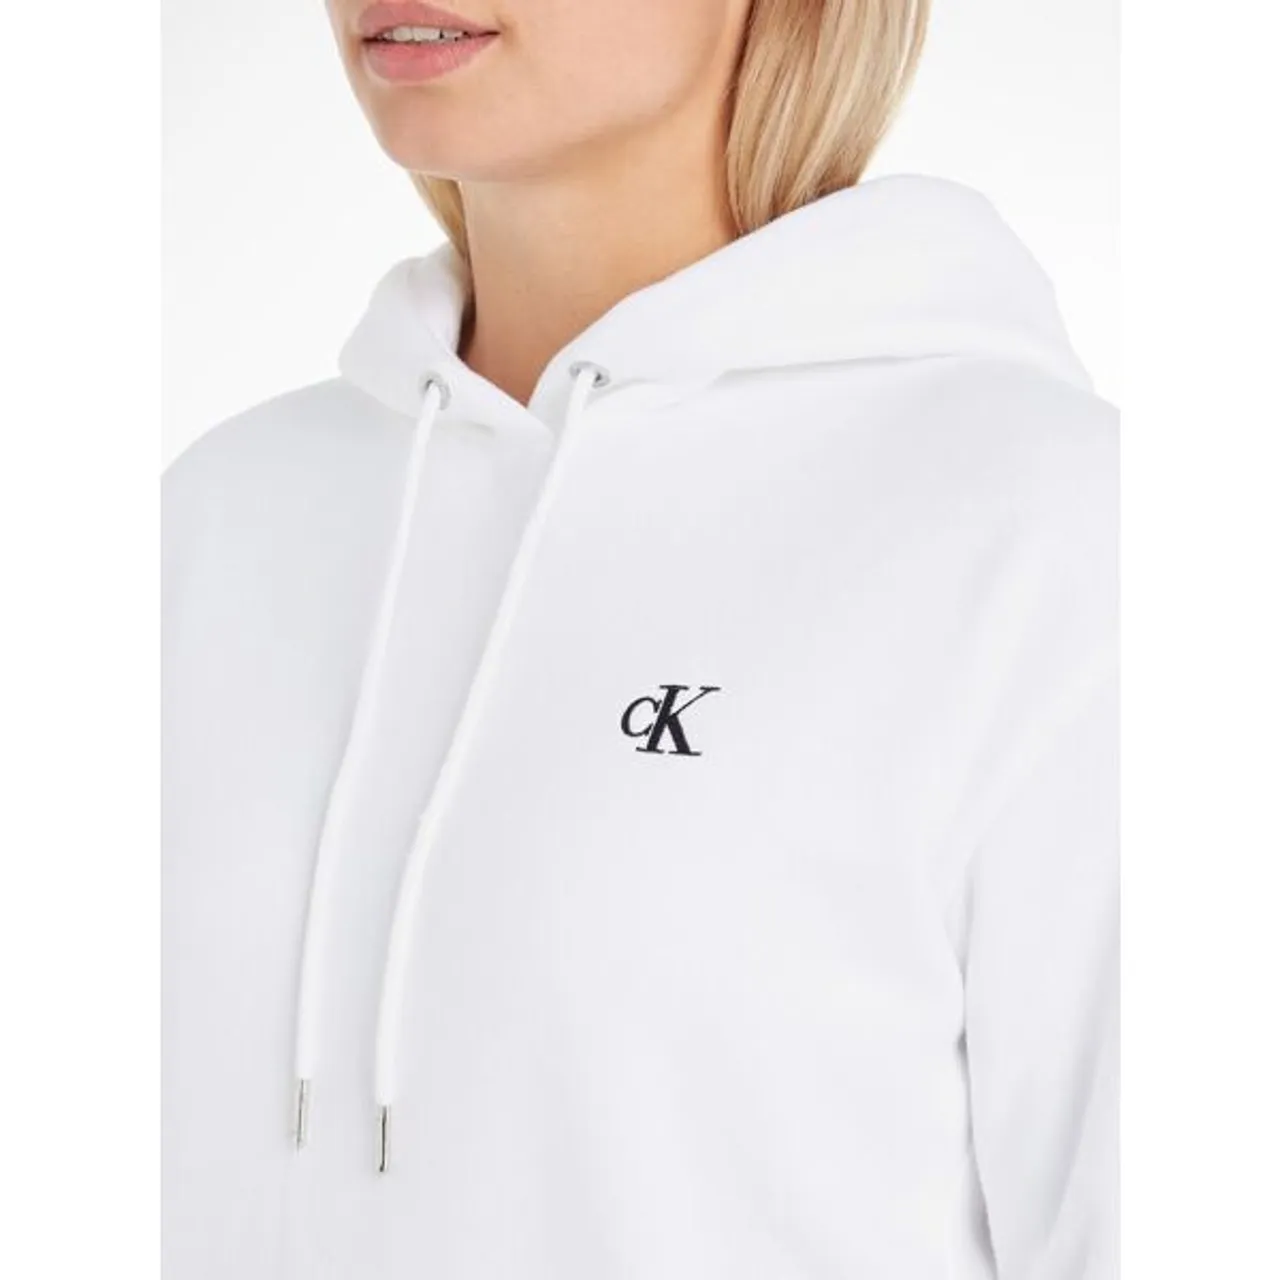 Kapuzensweatshirt CALVIN KLEIN JEANS "CK EMBROIDERY HD" Gr. XXXL (46), weiß (white) Damen Sweatshirts